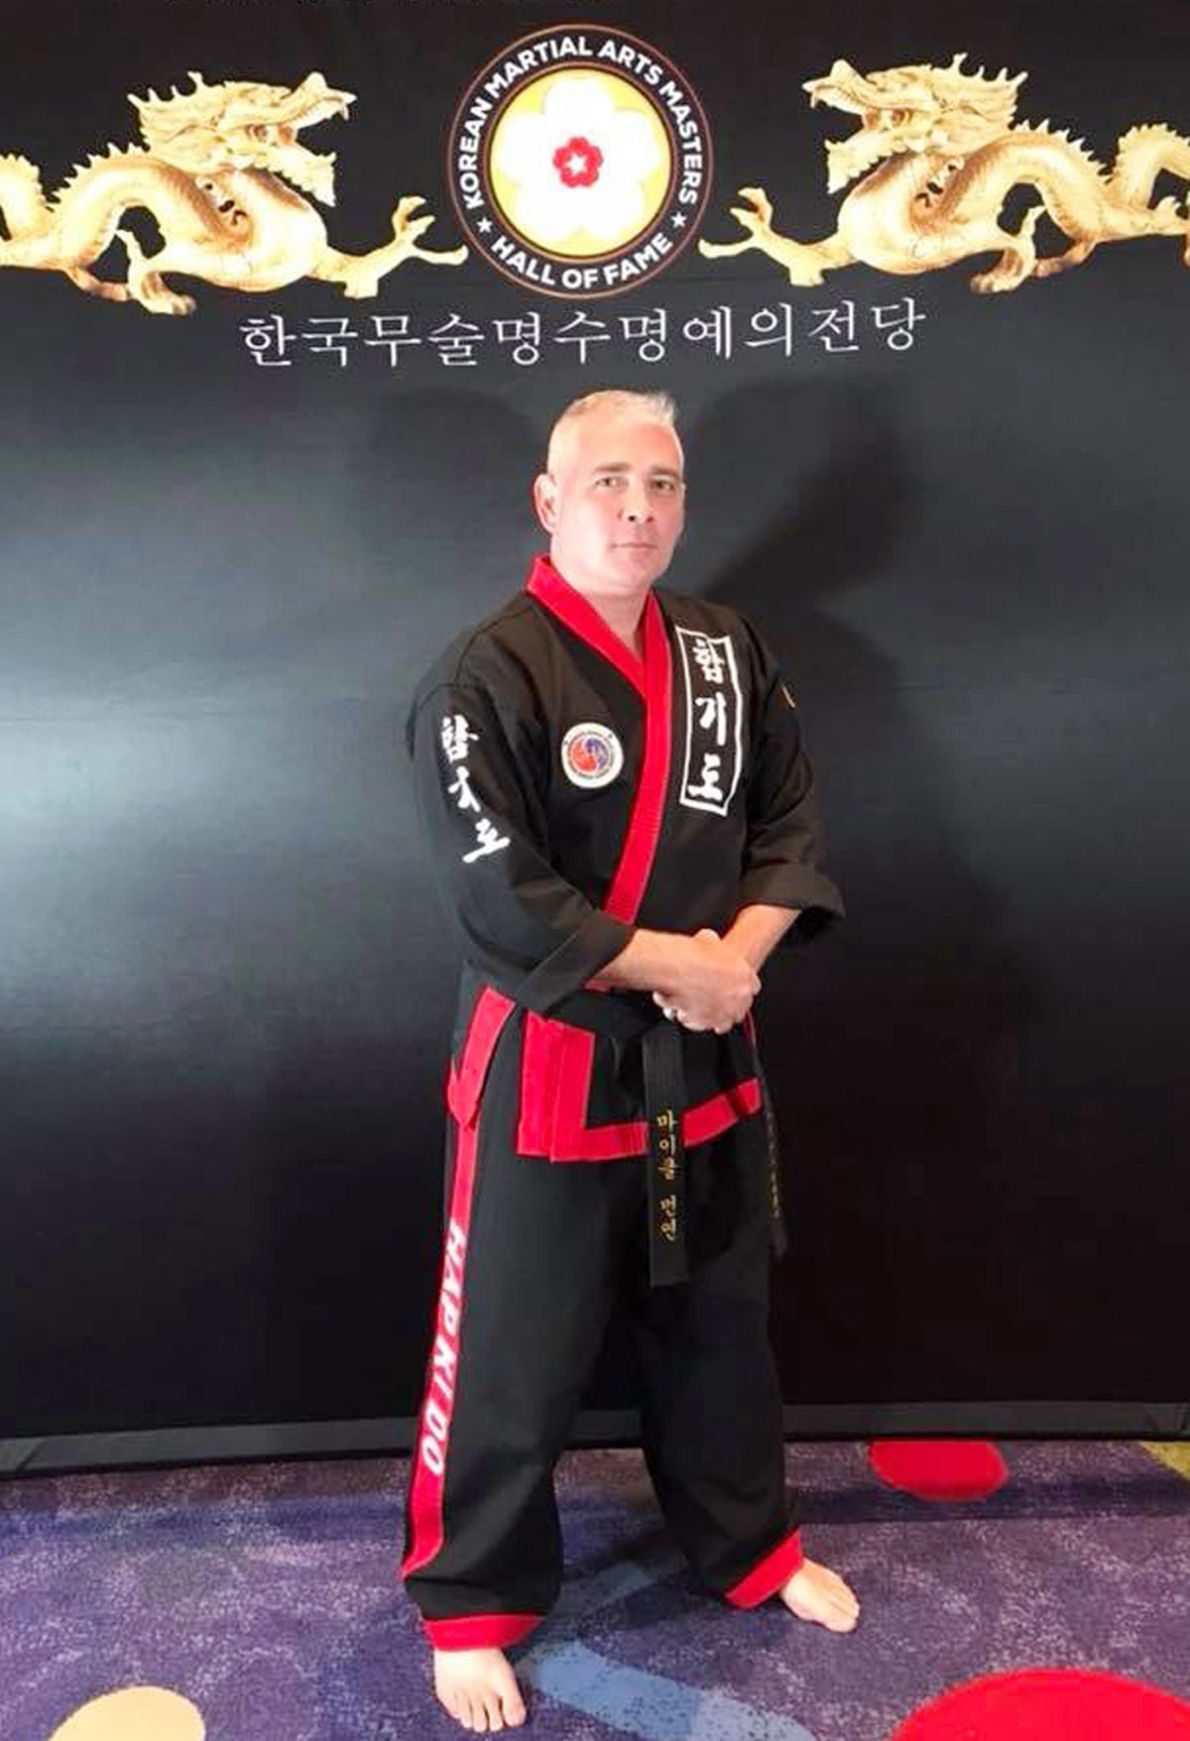 martial art master hung himself masterbating and died